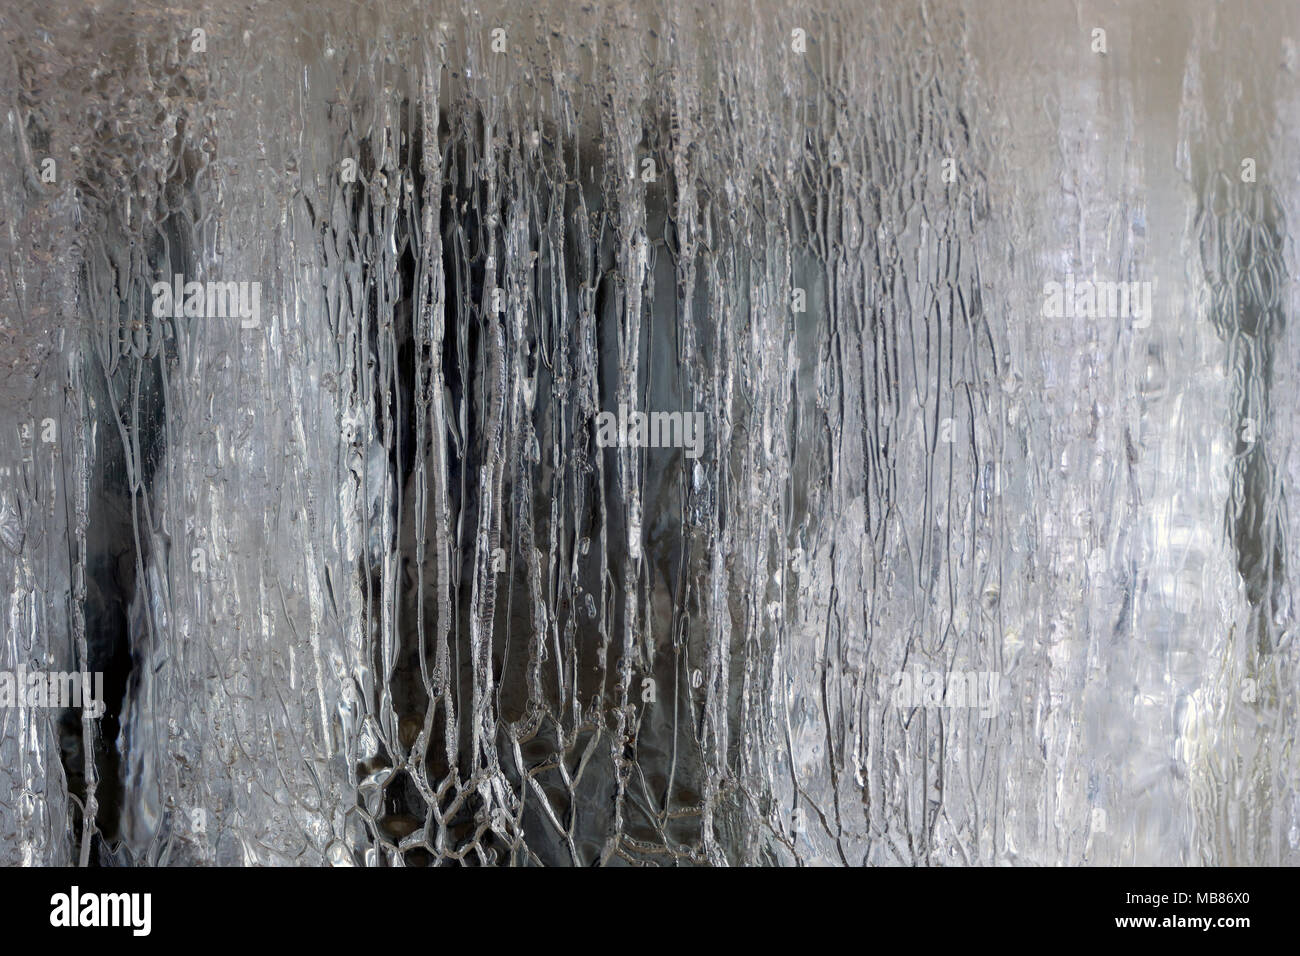 Hintergrund, Textur - durchsichtige Schicht schmilzt das Eis mit einem Muster von zahlreiche Risse Stockfoto